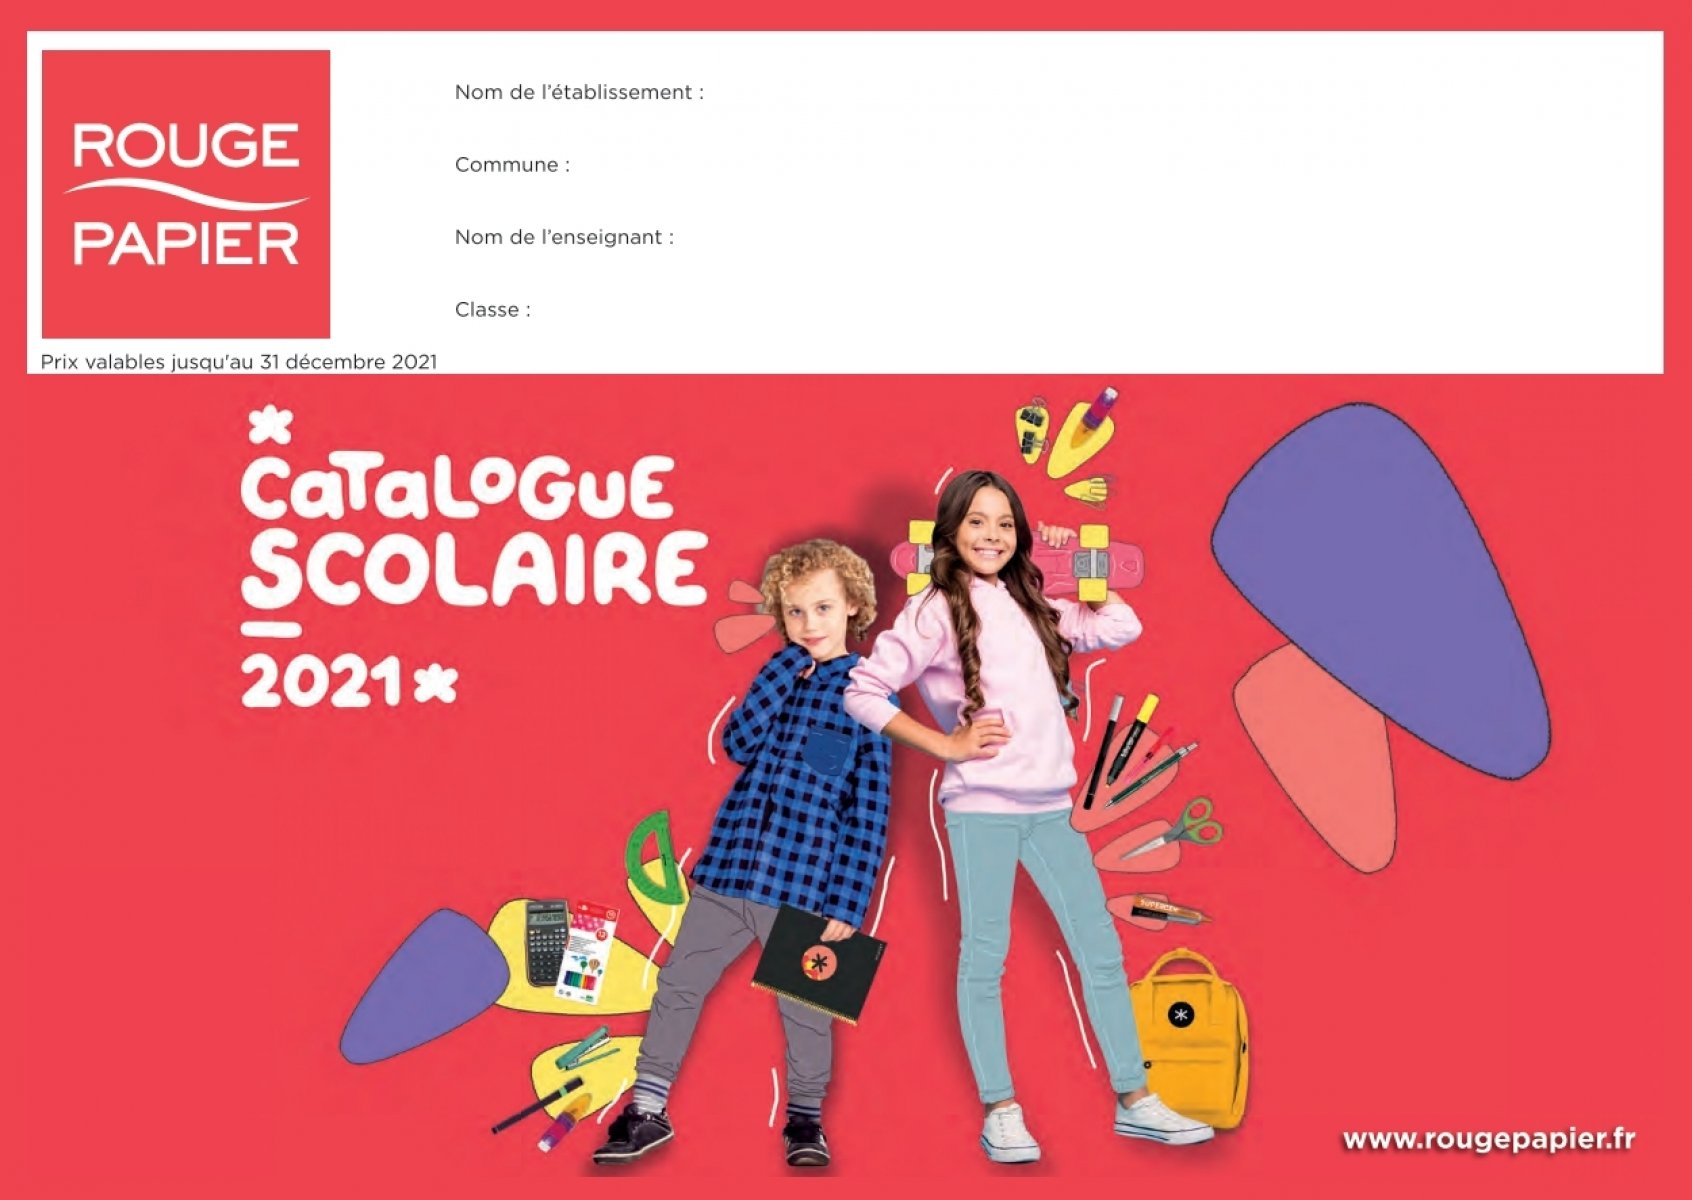 STABILO Maxi Schoolpack de 300 crayons de couleur Trio - Boîte en carton